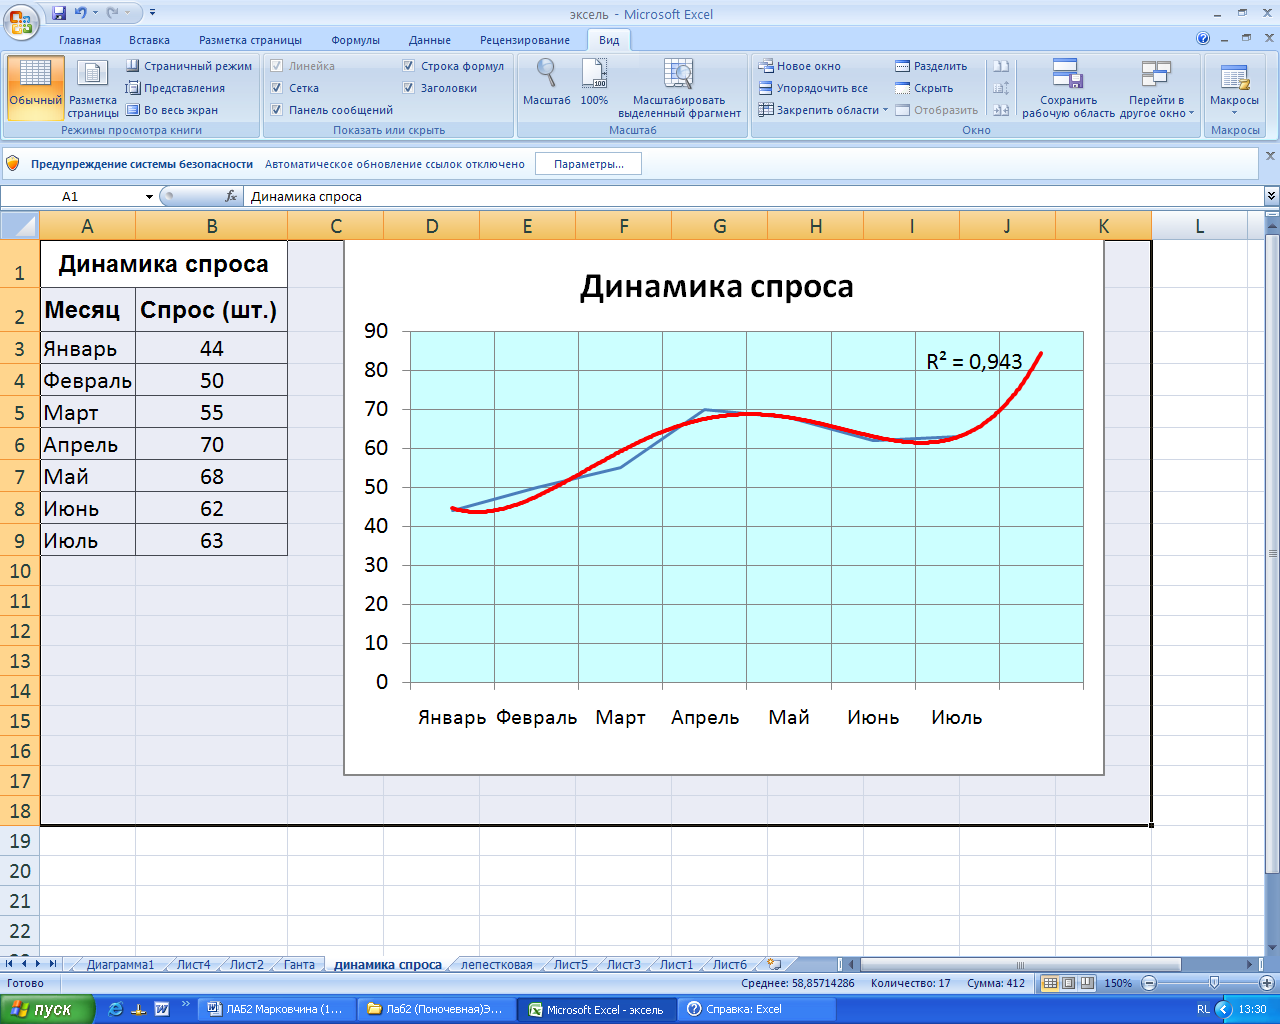 Практические работы в Microsoft Office Excel 2007